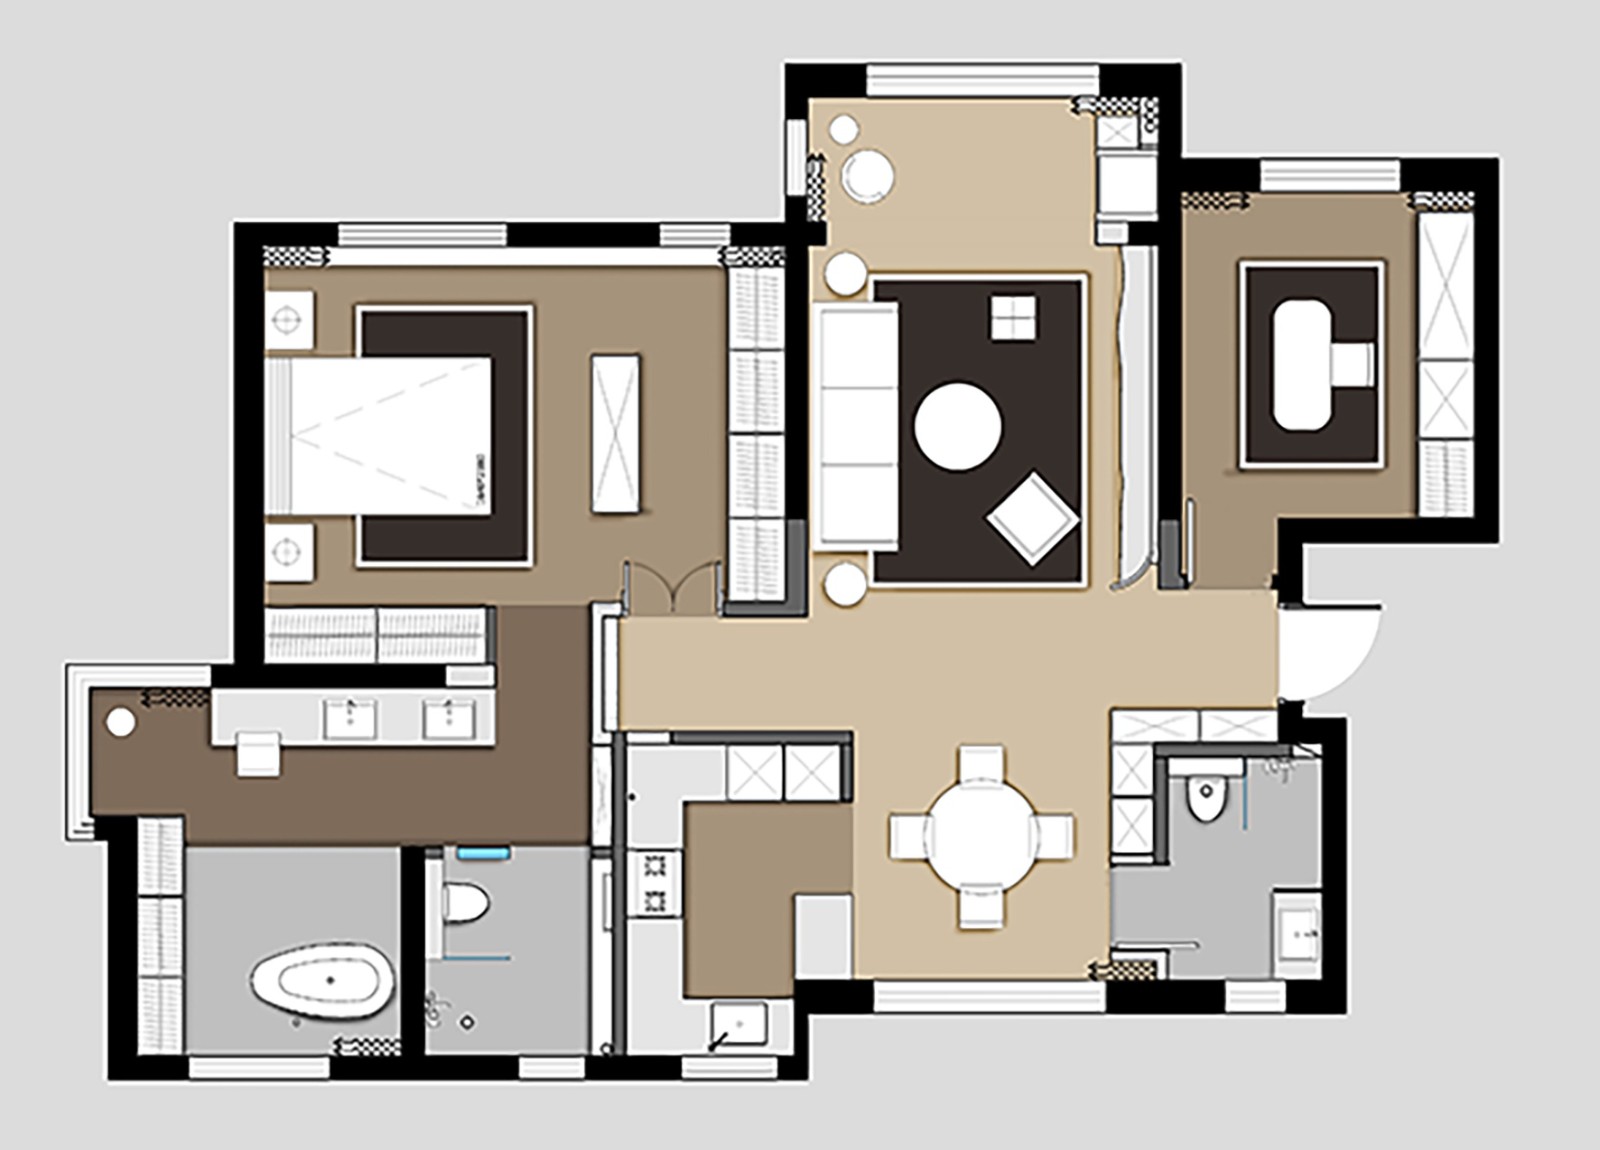 110现代三房装修效果图,简约创意设计装修案例效果图-美广网(图1)